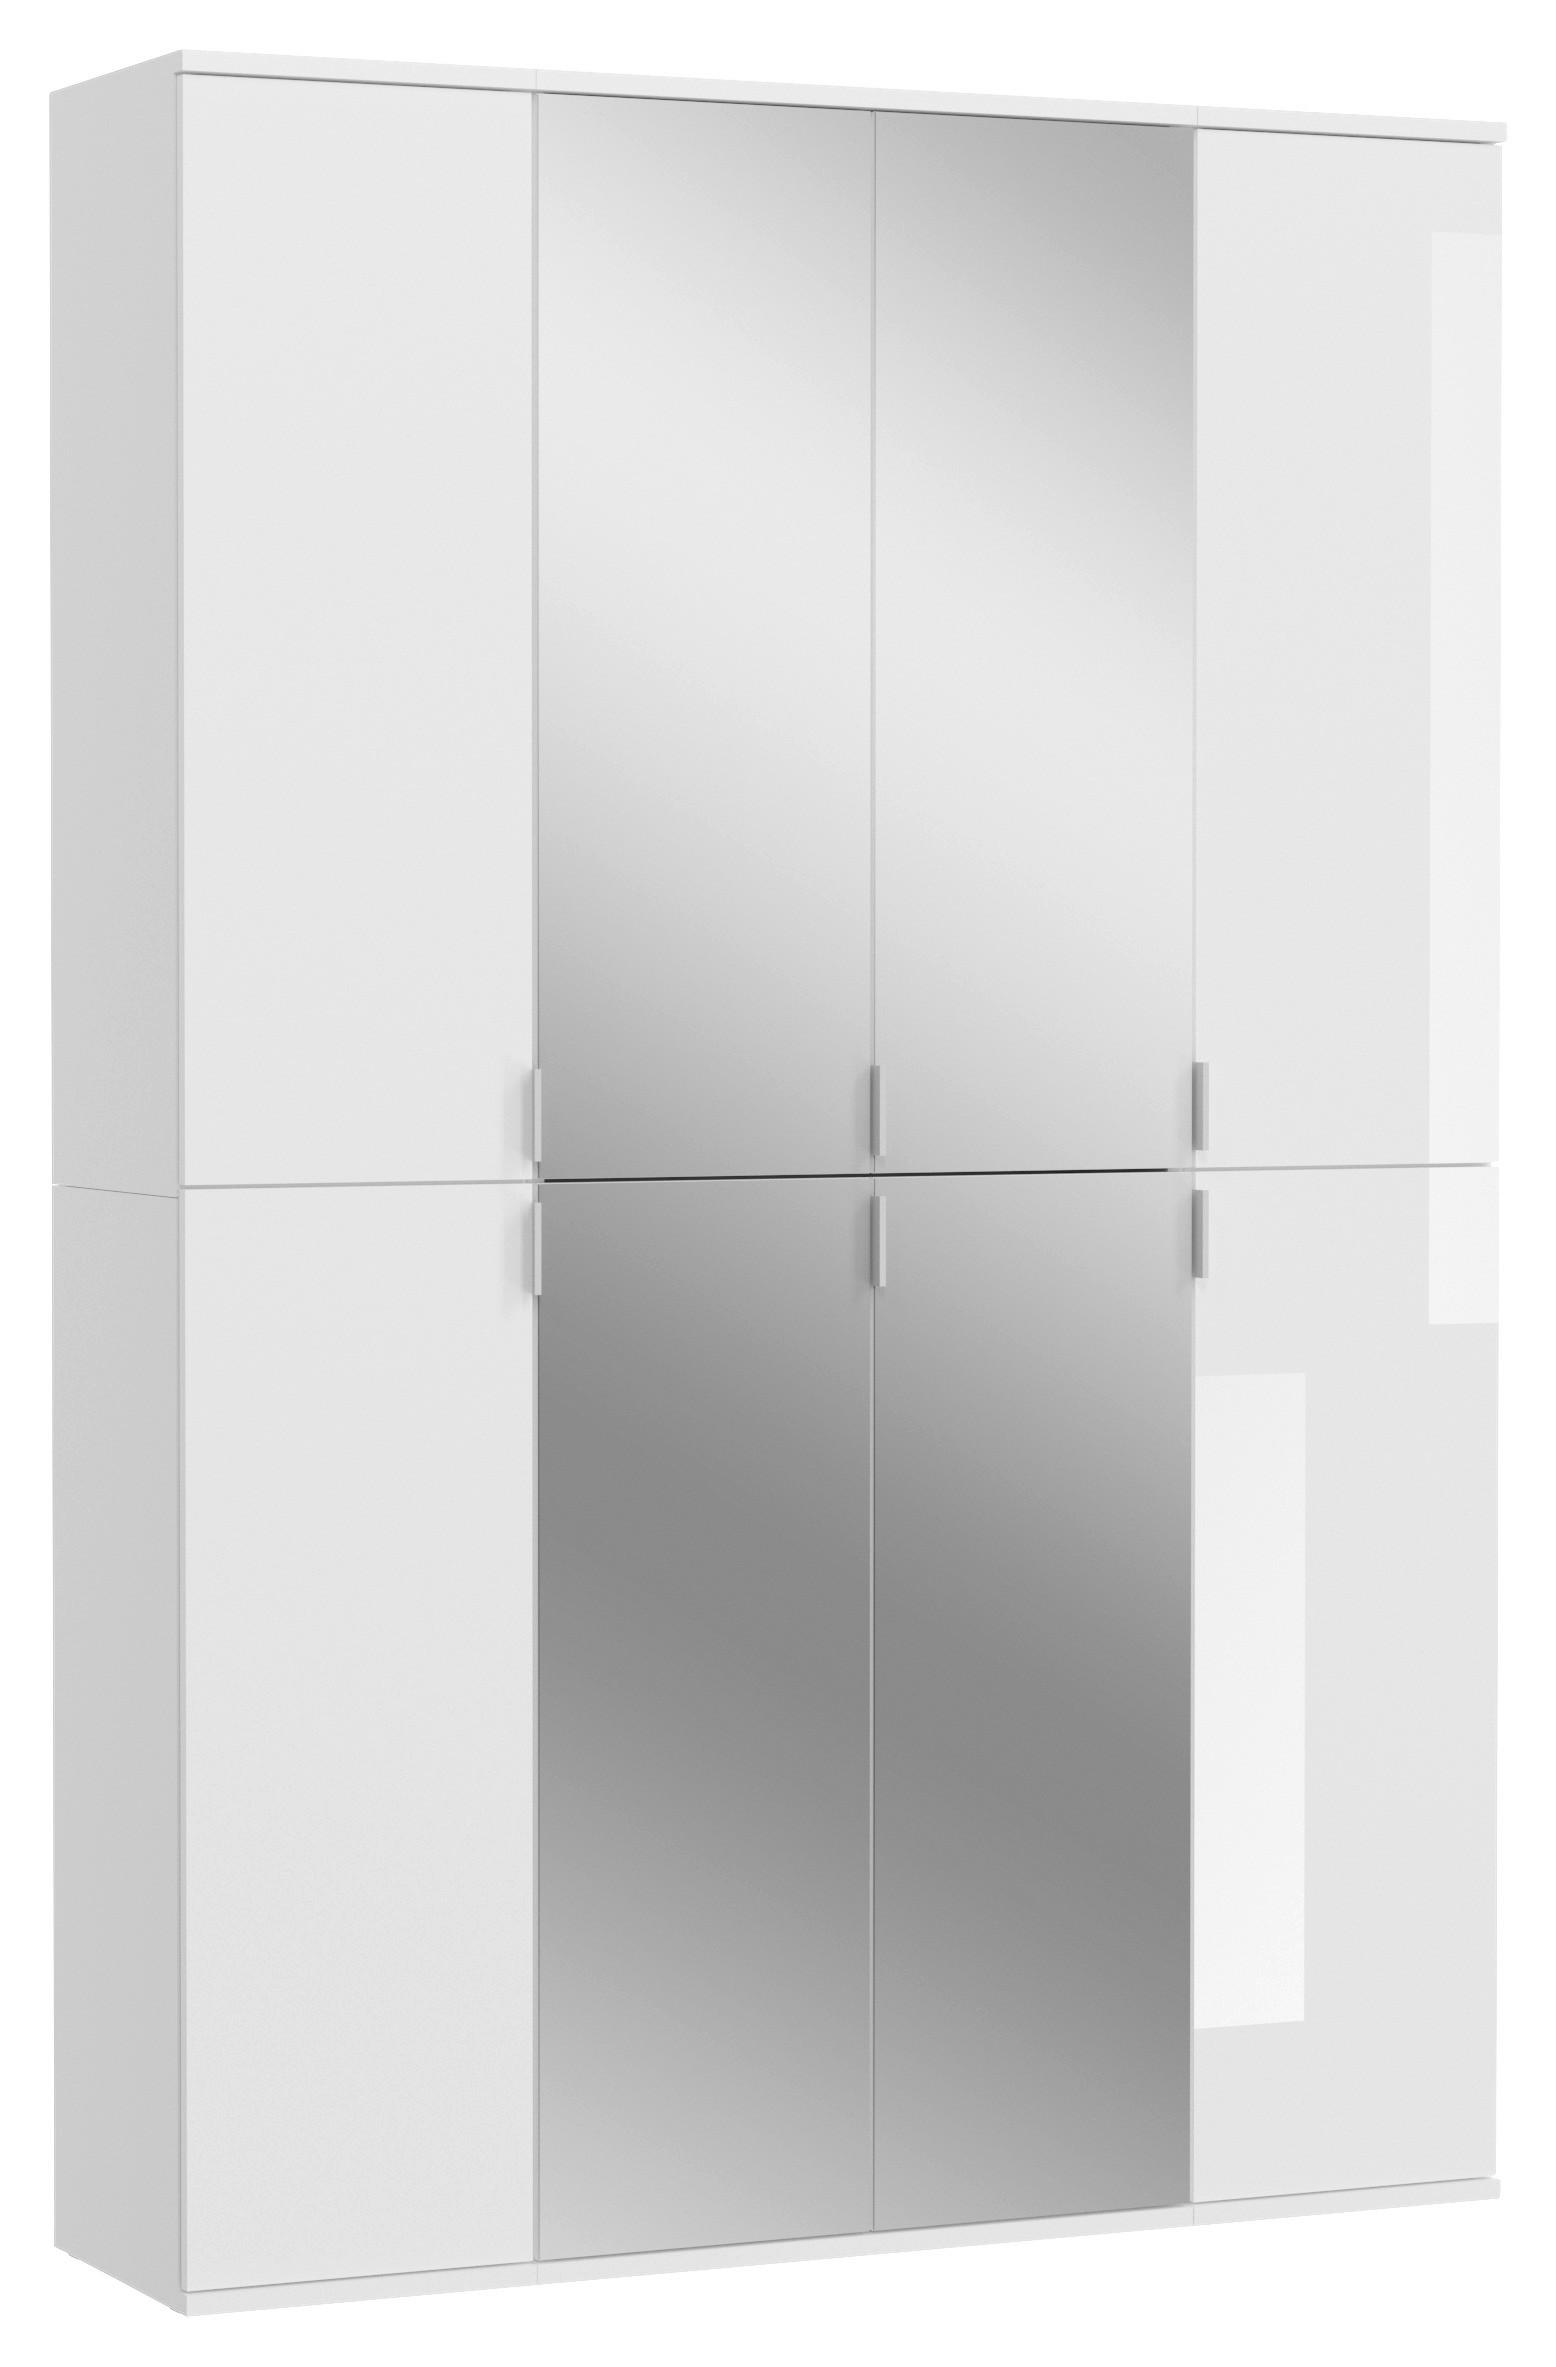 DREHTÜRENSCHRANK 8-türig Weiß  - Chromfarben/Weiß Hochglanz, MODERN, Glas/Holzwerkstoff (121/193/34cm) - MID.YOU